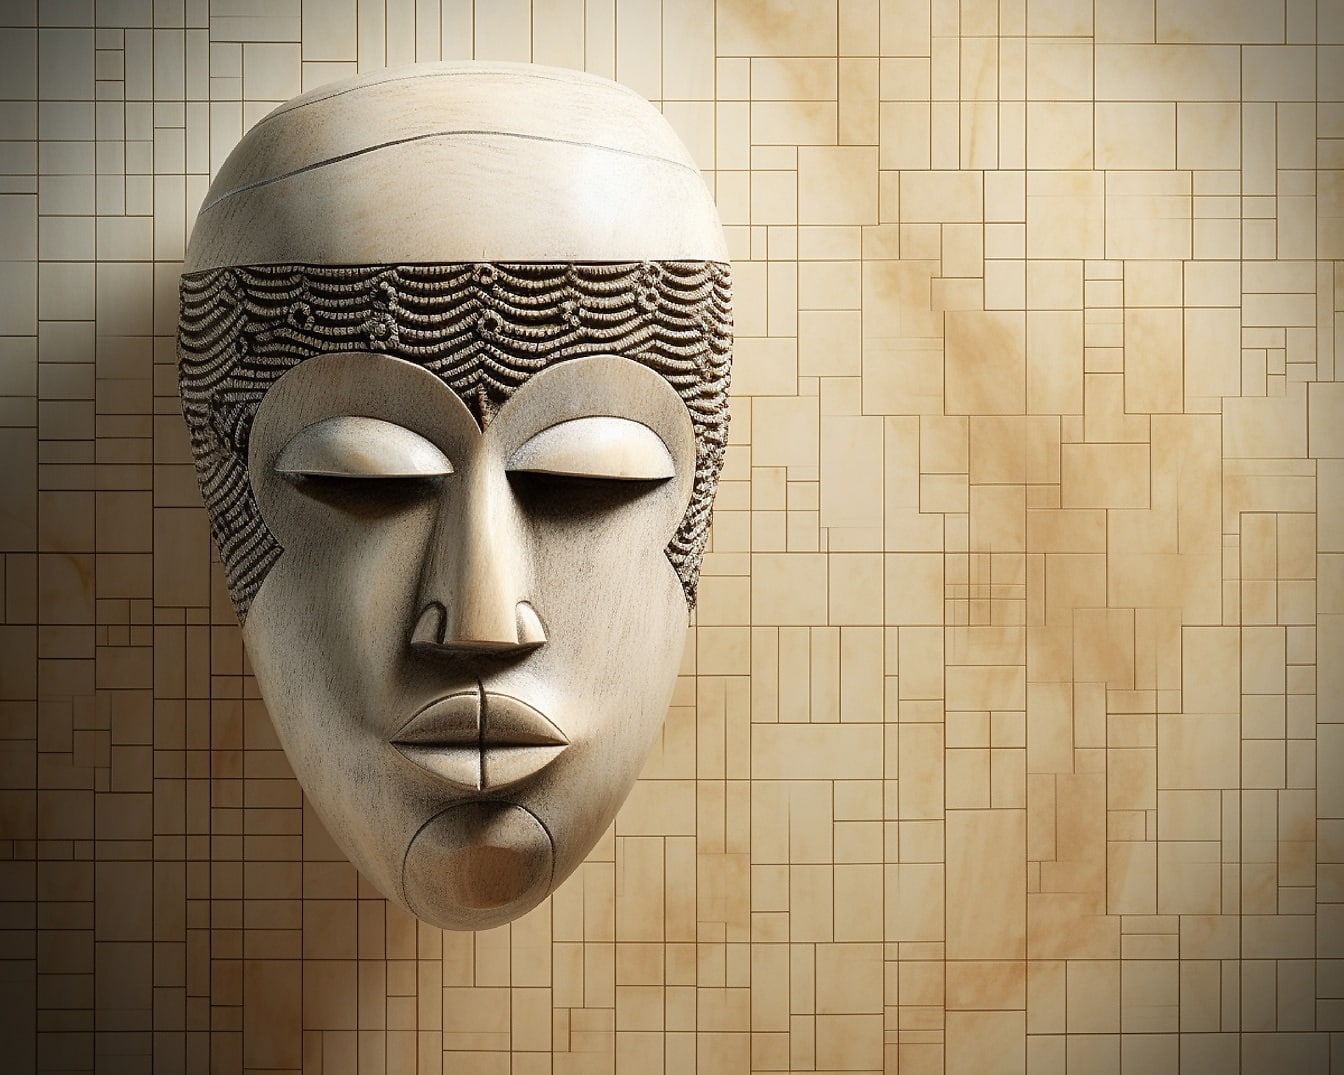 3D model objekta prikazuje masku za lice